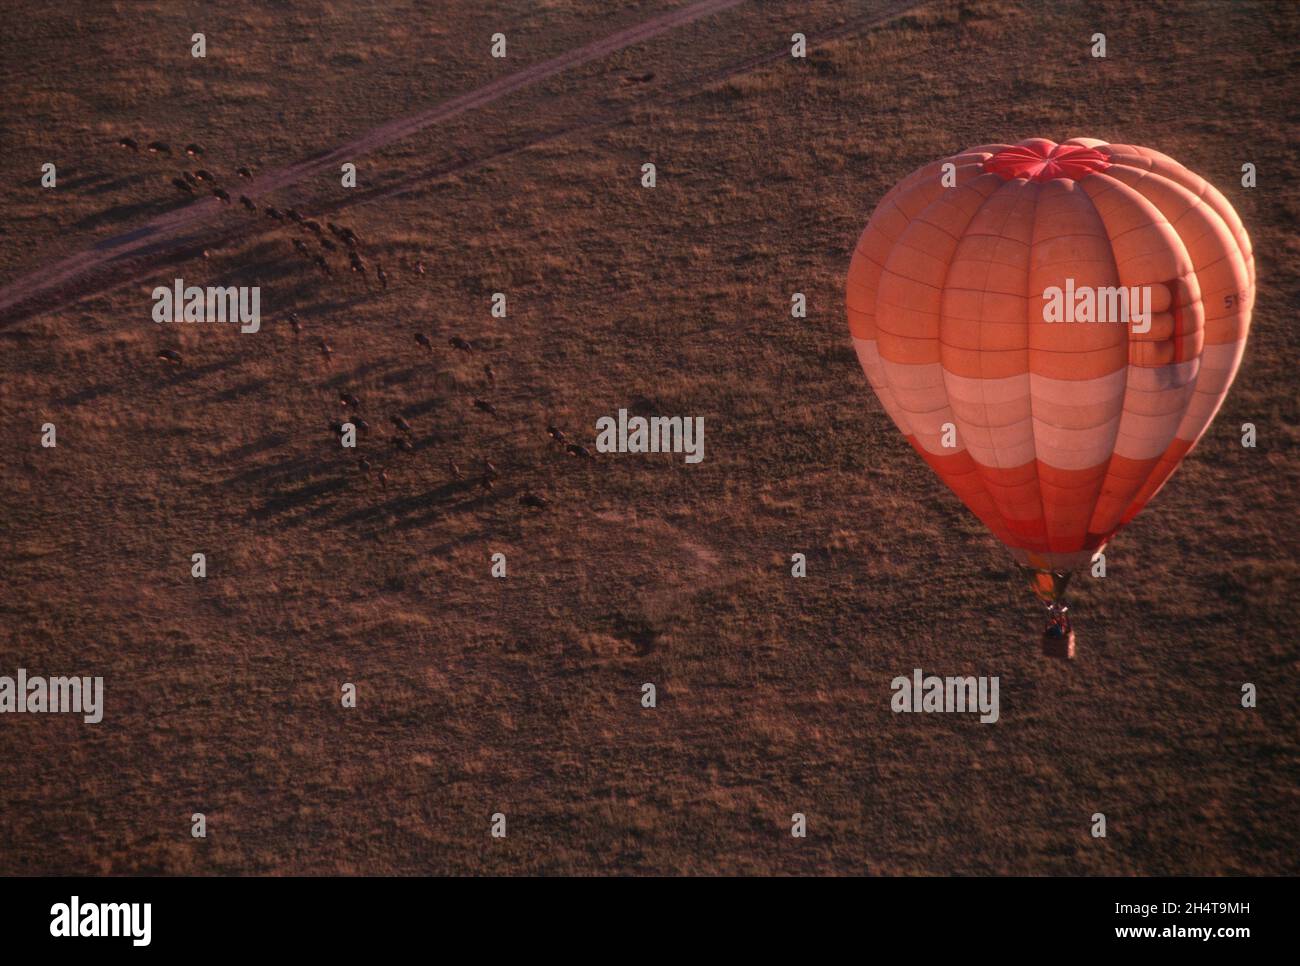 Heißluftballon, der über die Migration der Wildnis fliegt, Masai Mara Game Reserve, Kenia Stockfoto